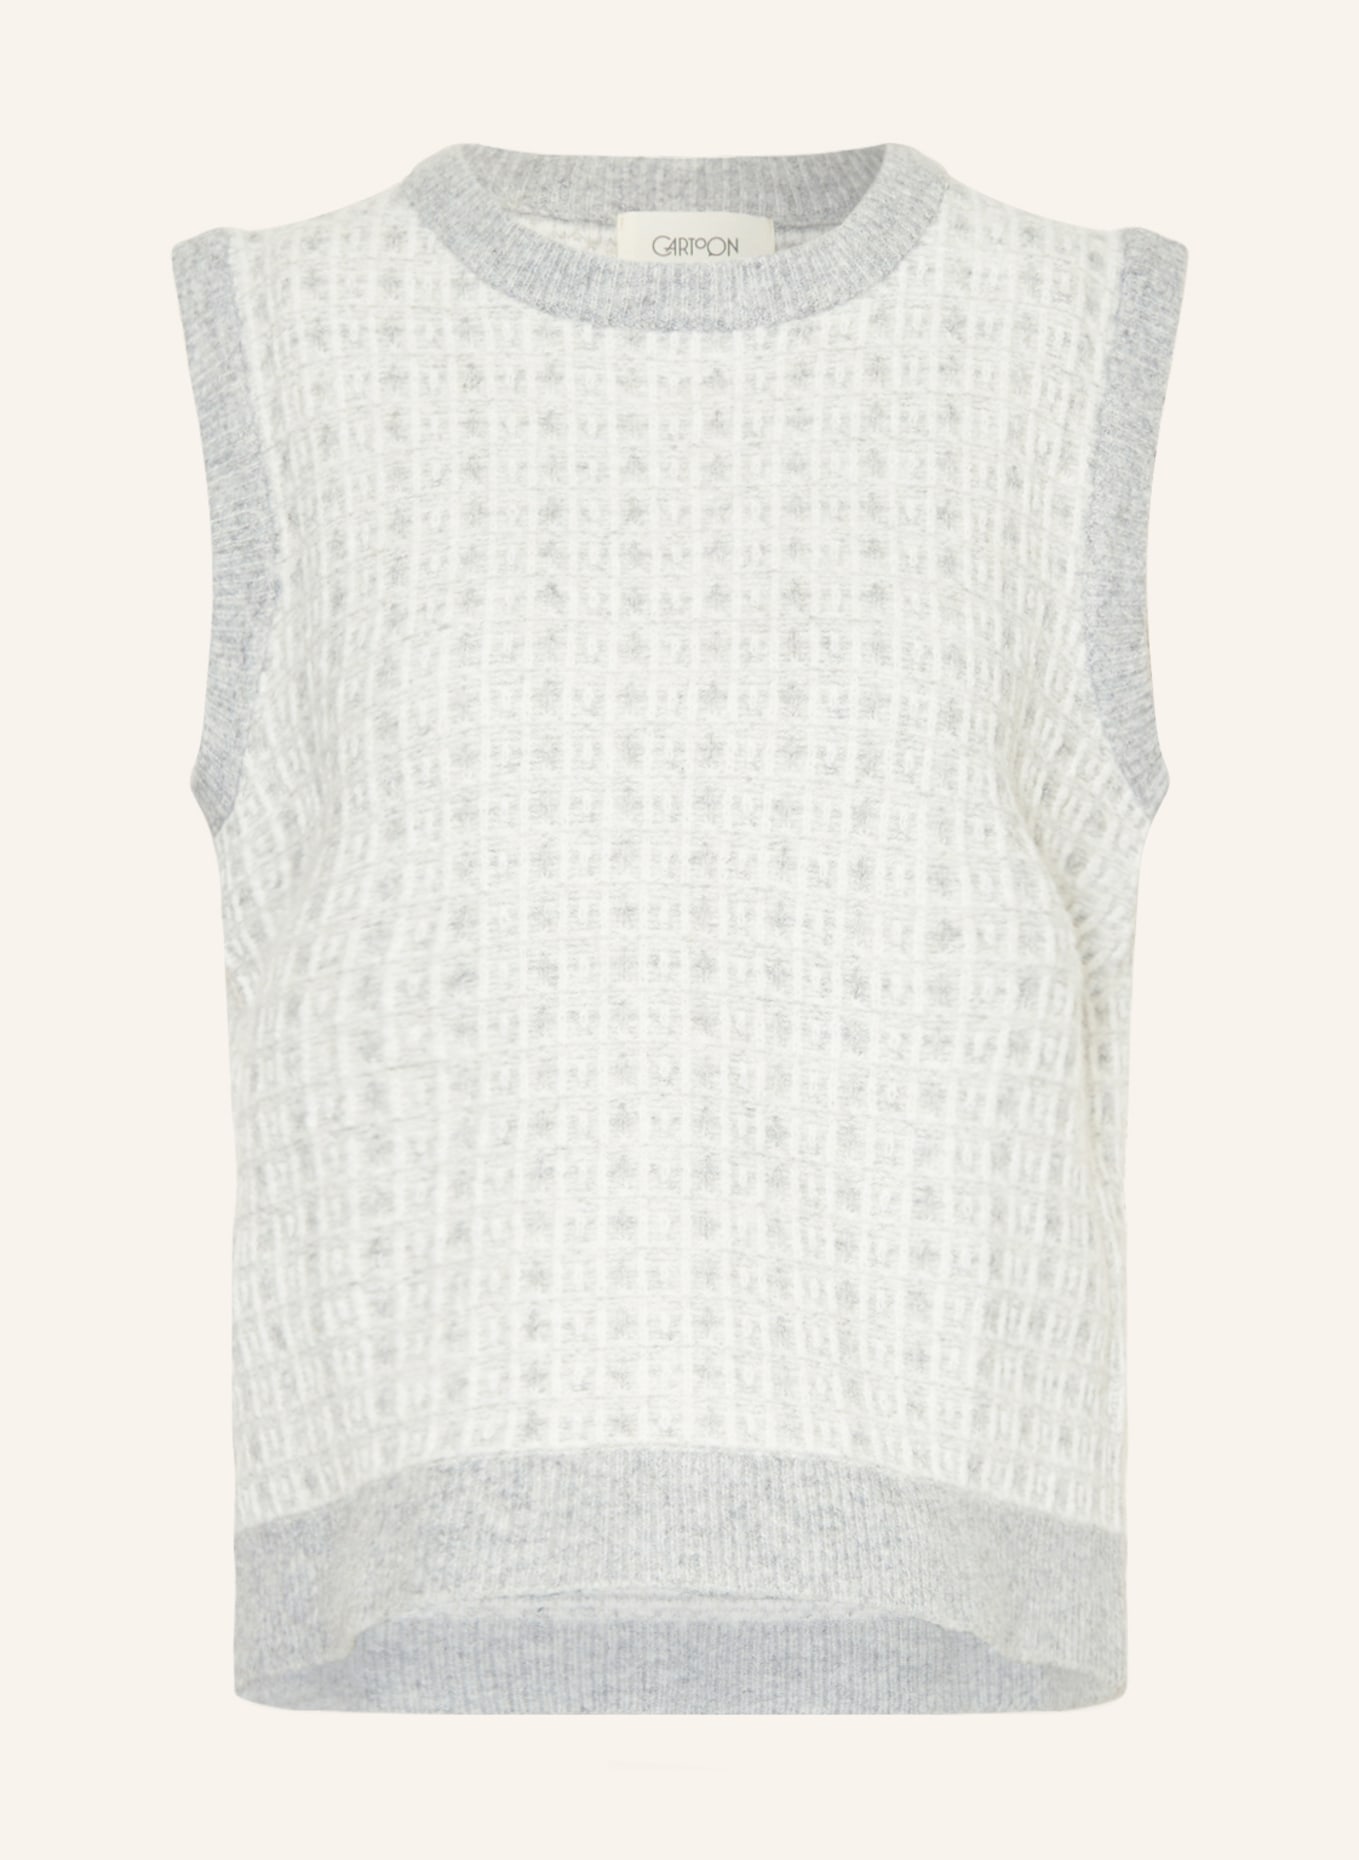 CARTOON Sweater vest, Color: LIGHT GRAY/ CREAM (Image 1)